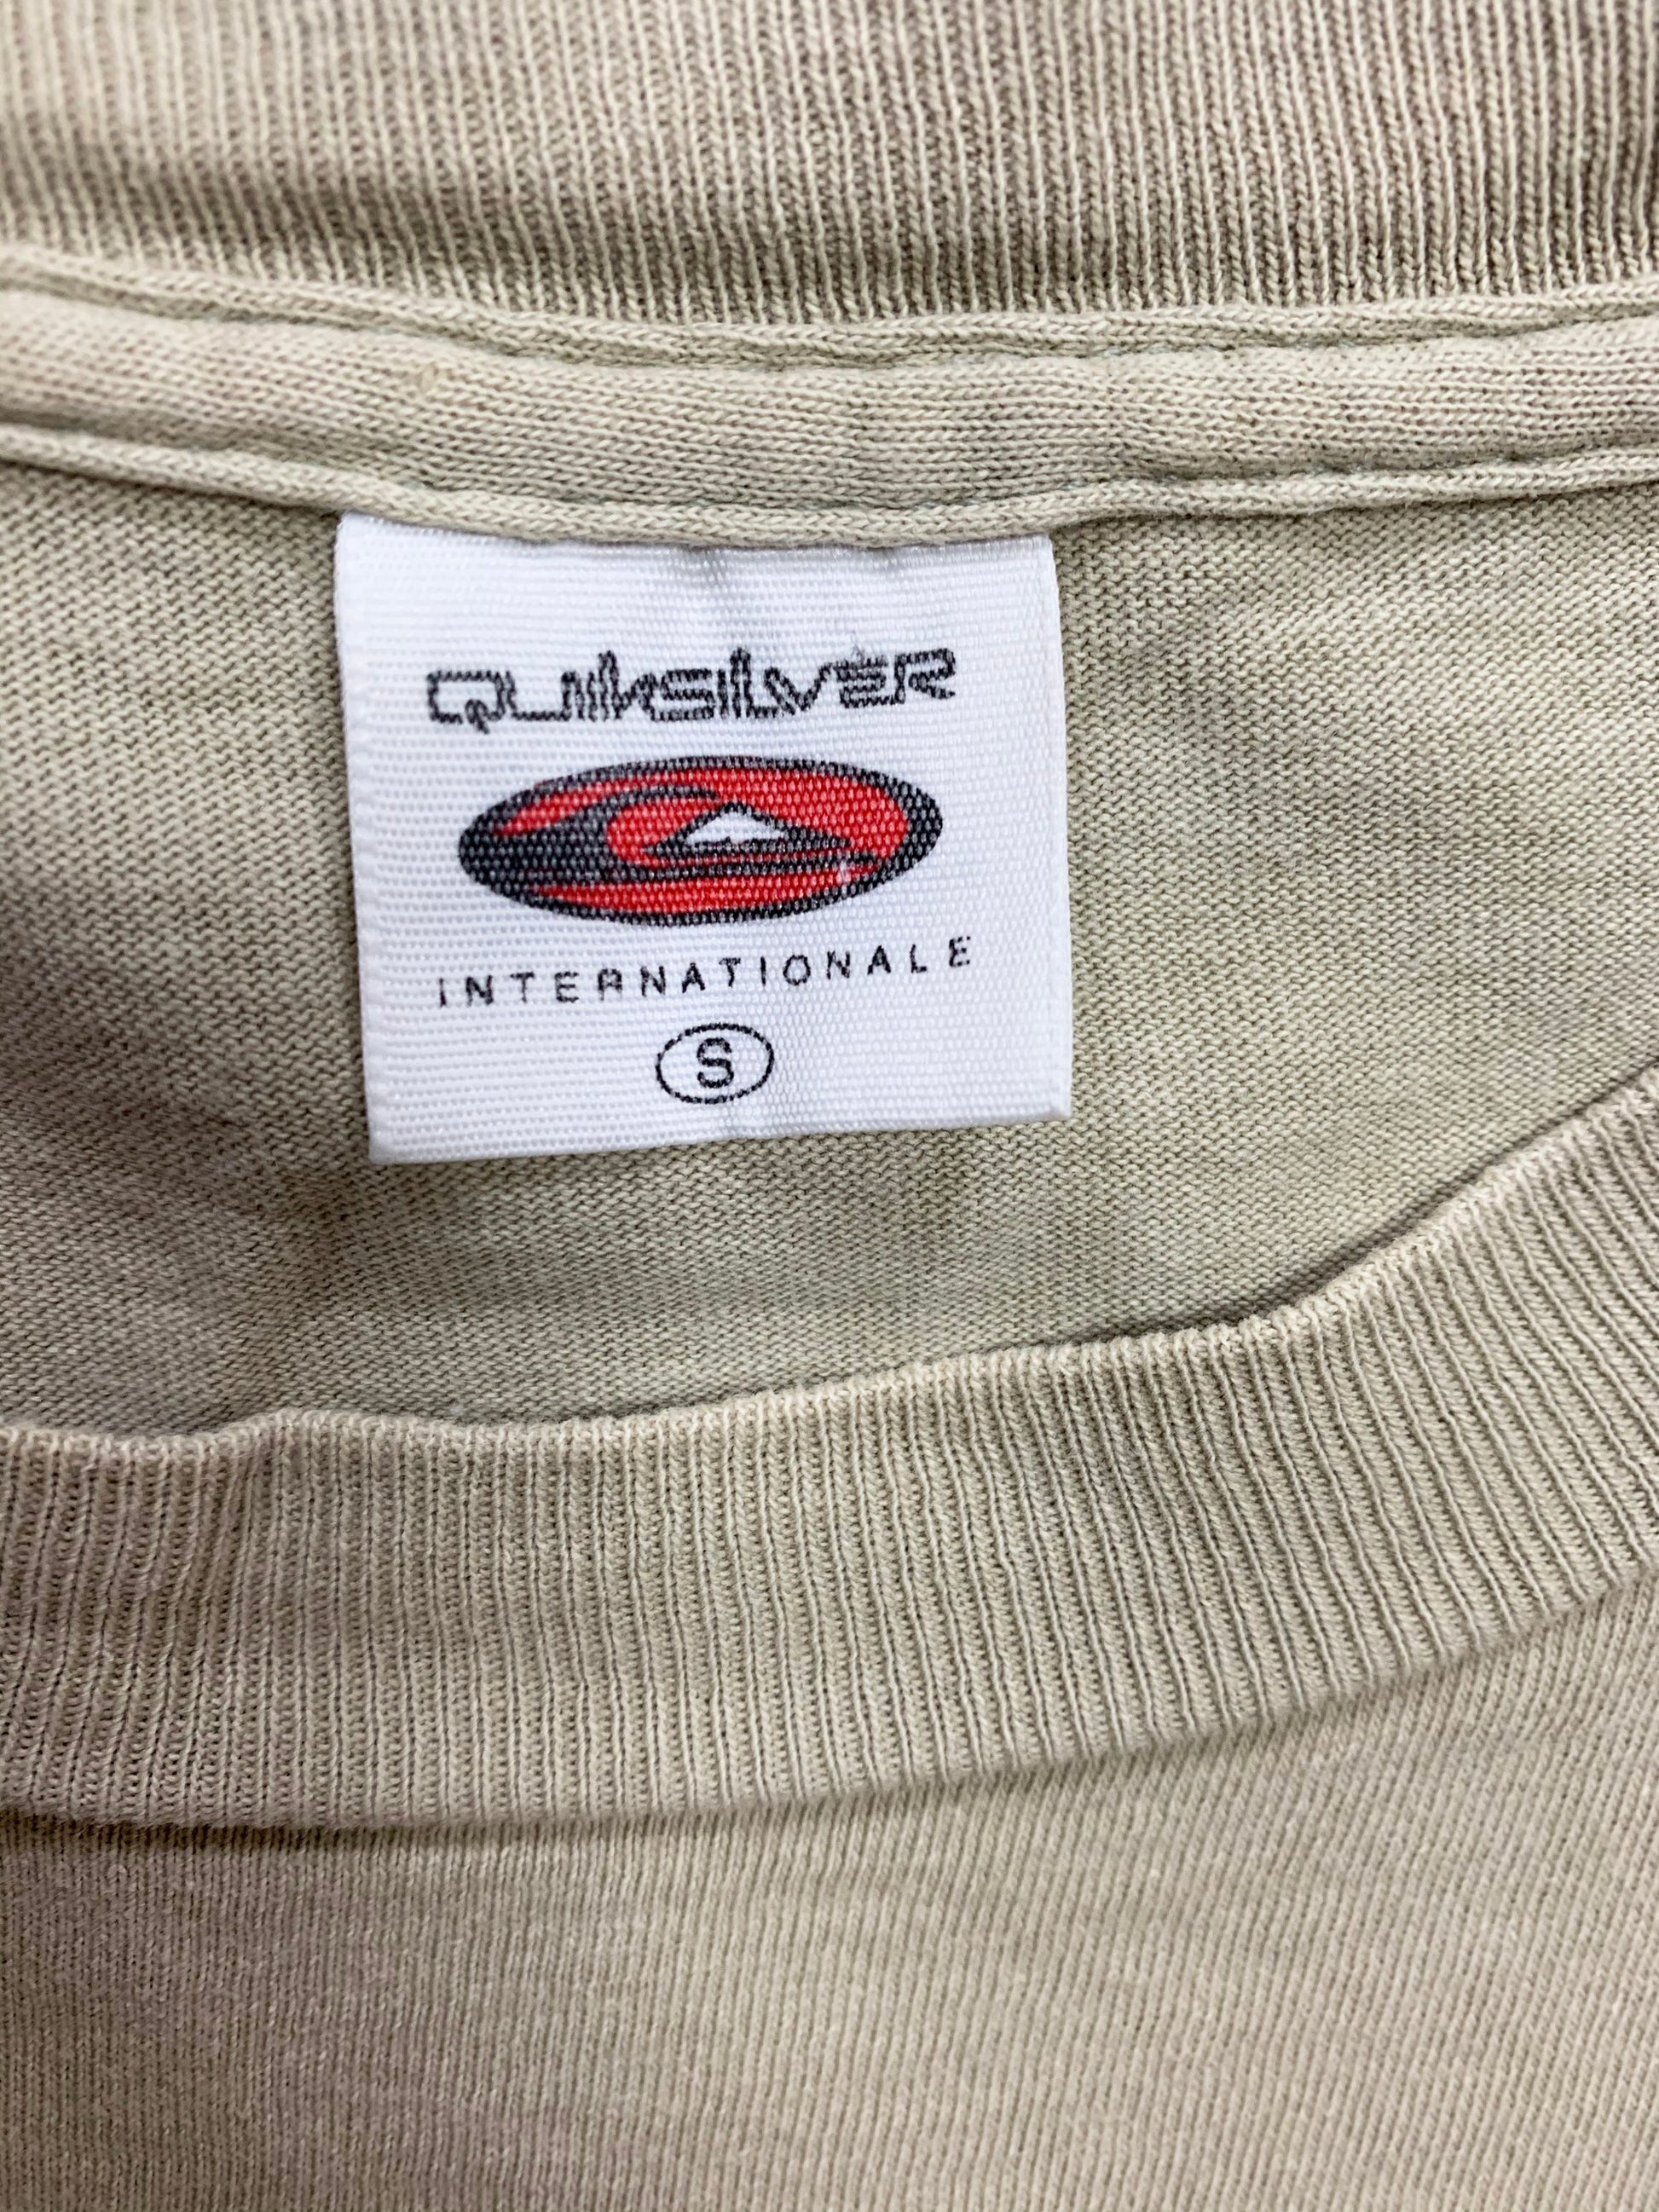 Quik silver】90s クィックシルバー オールドサーフ Tシャツ (men's S) – sup rising